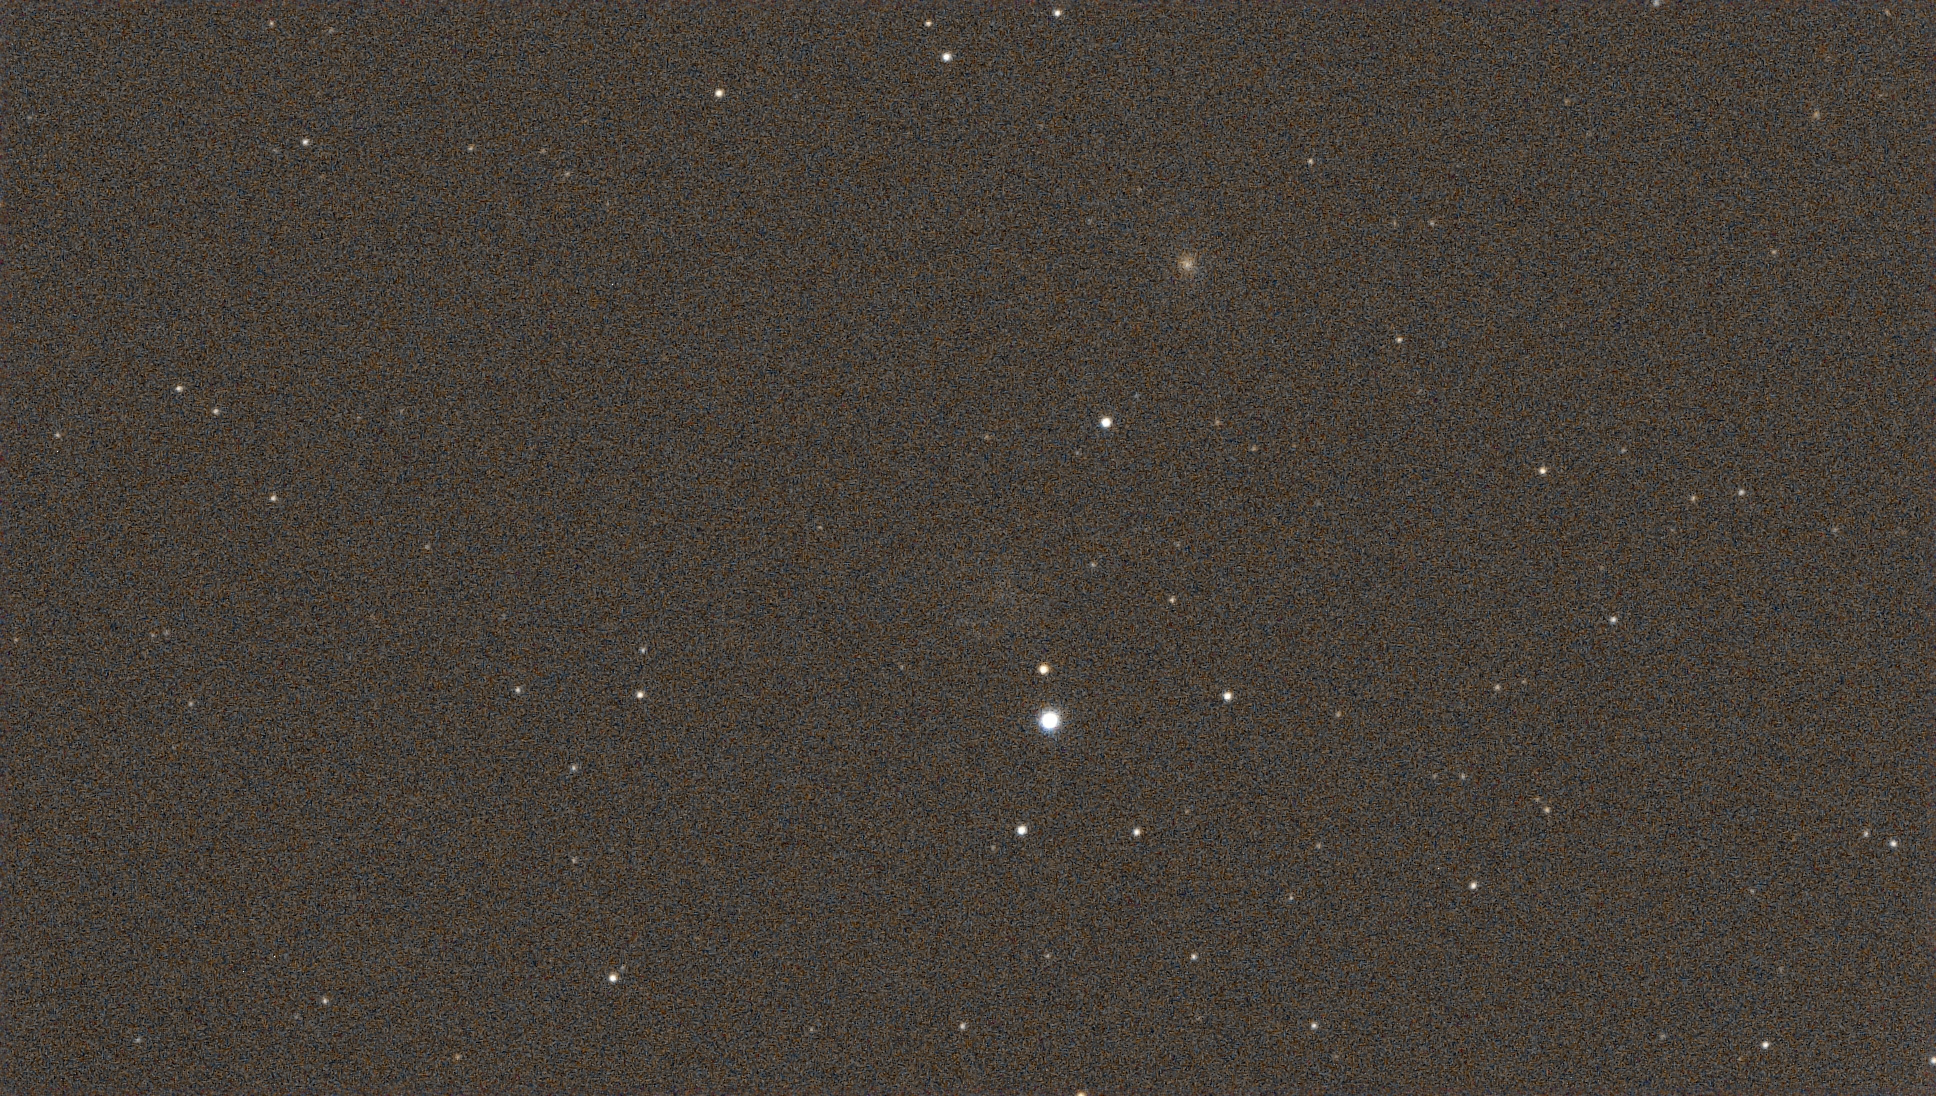 61b25f49b4dda_NGC2276brute.jpg.d534101ad4a704d60e397901a4c9202d.jpg